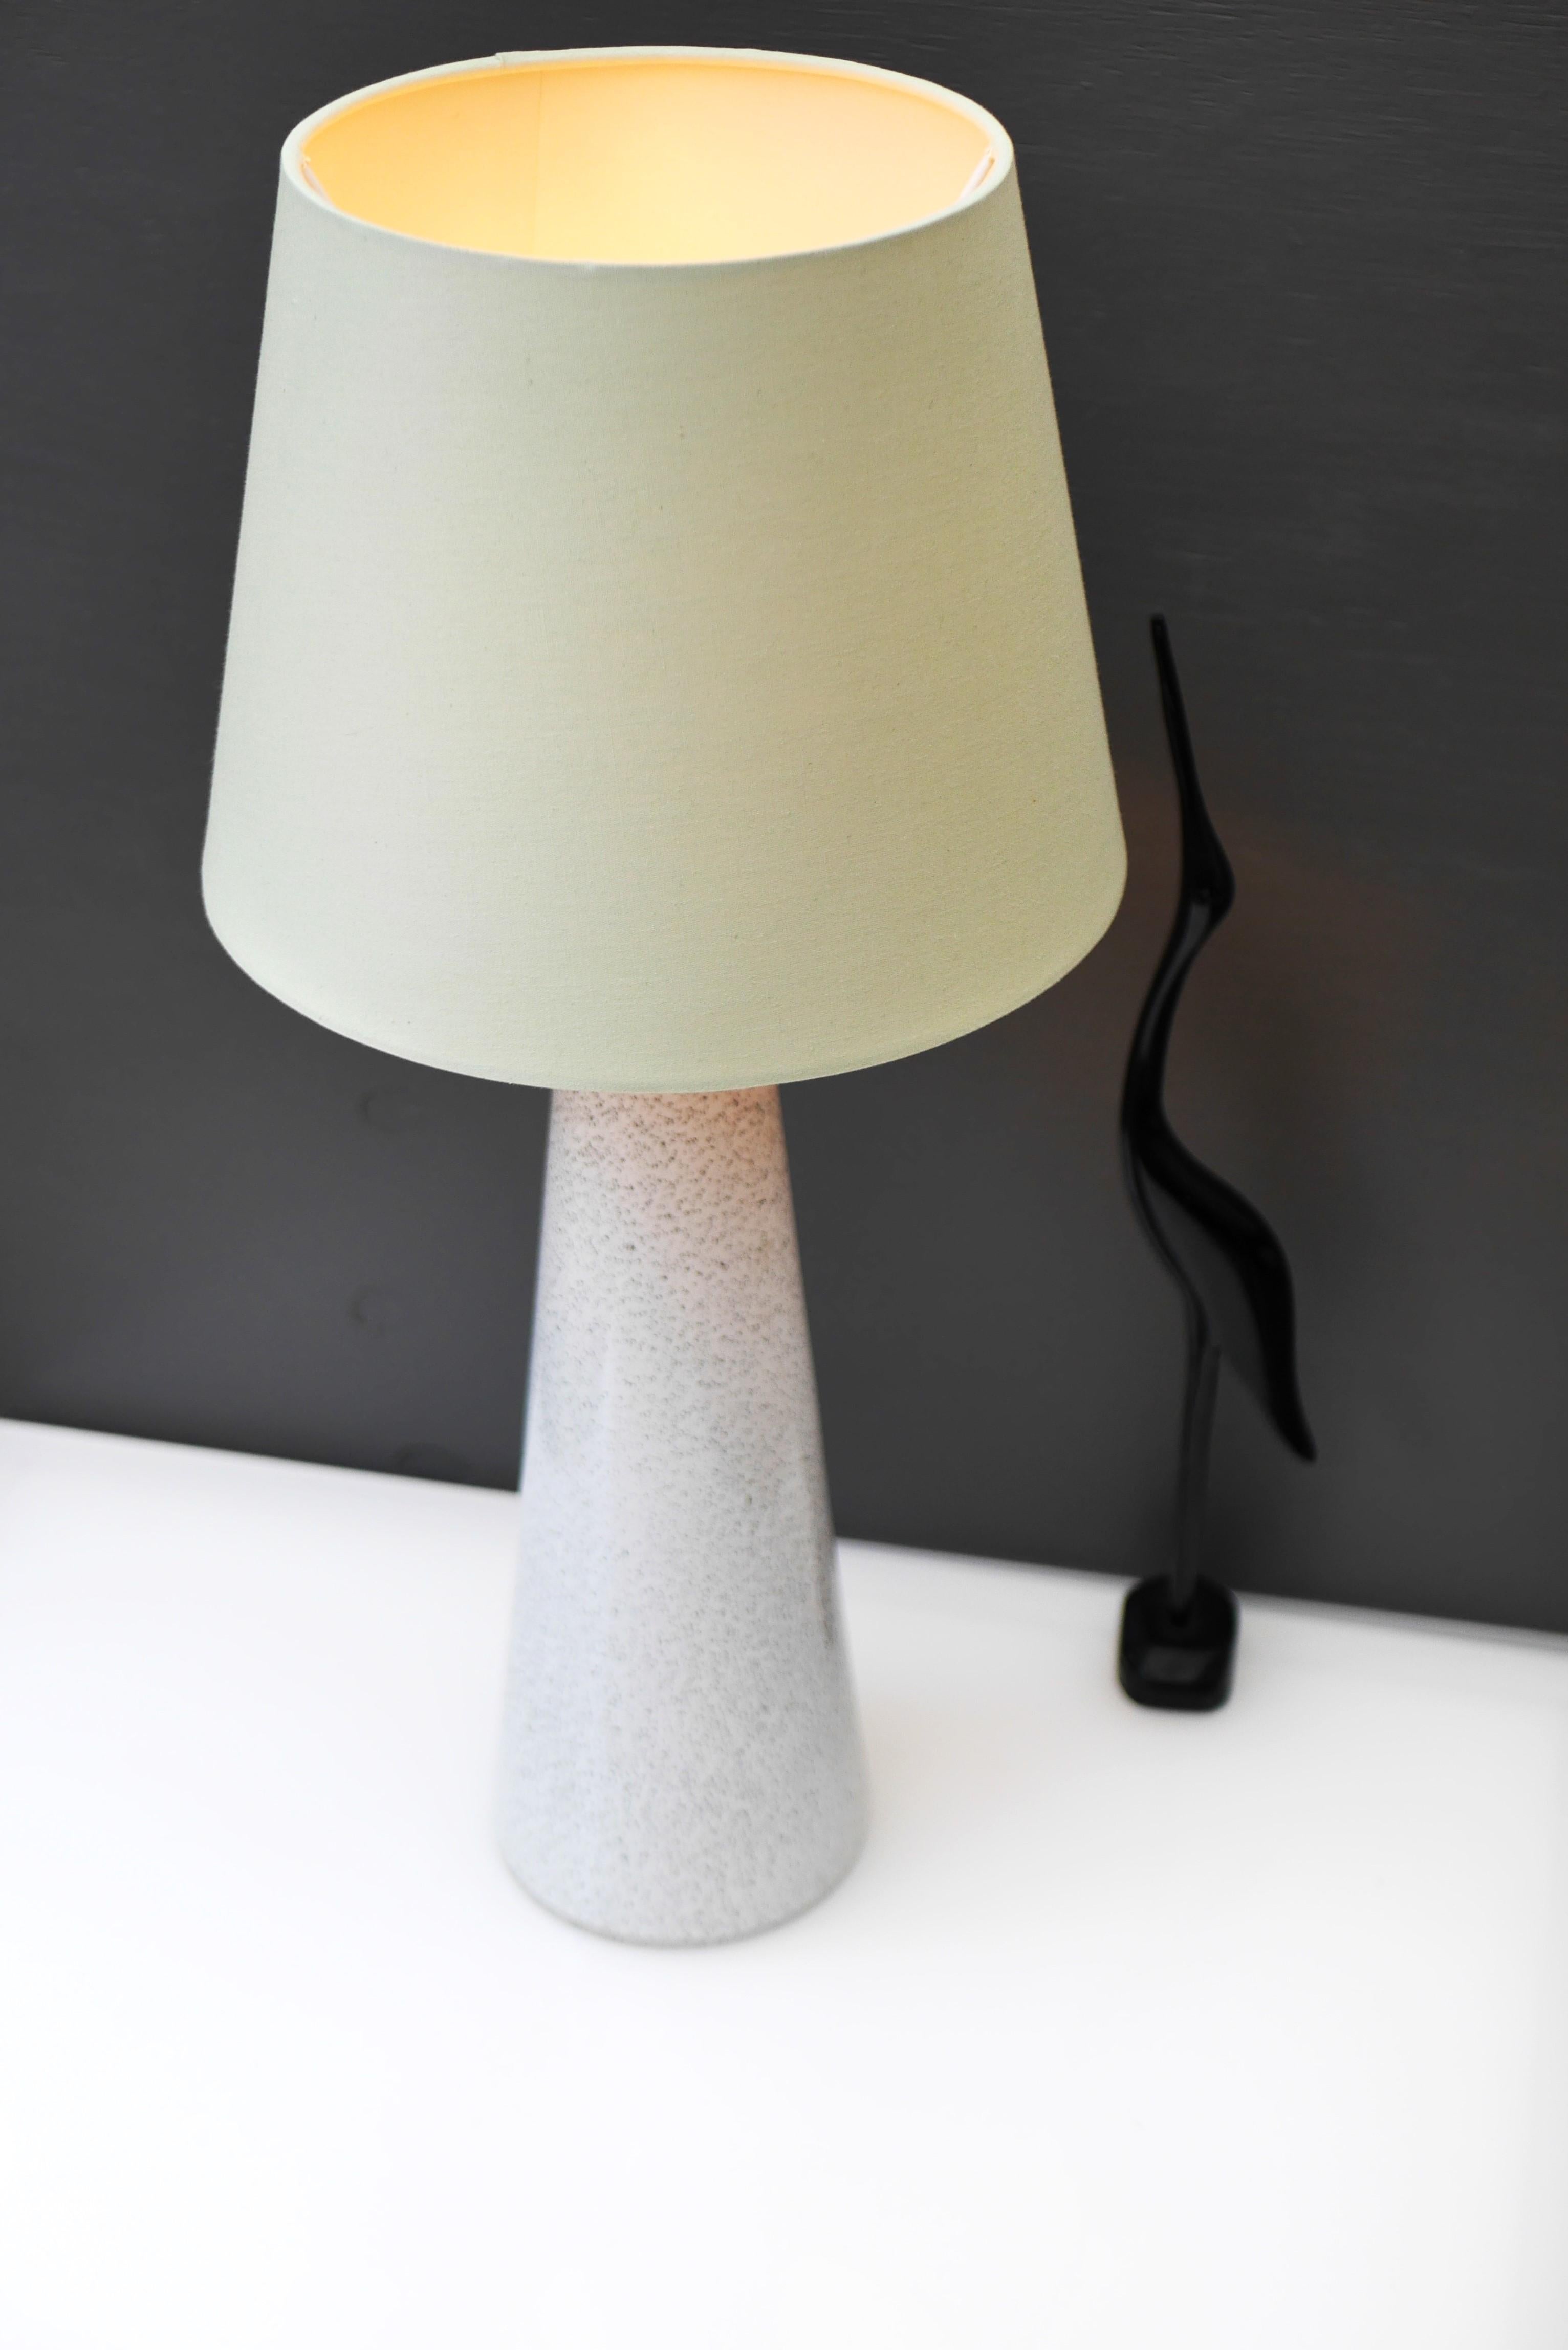 An elegant glass art table lamp made by Bengt Orup for Hyllinge Glasbruk, Sweden For Sale 1